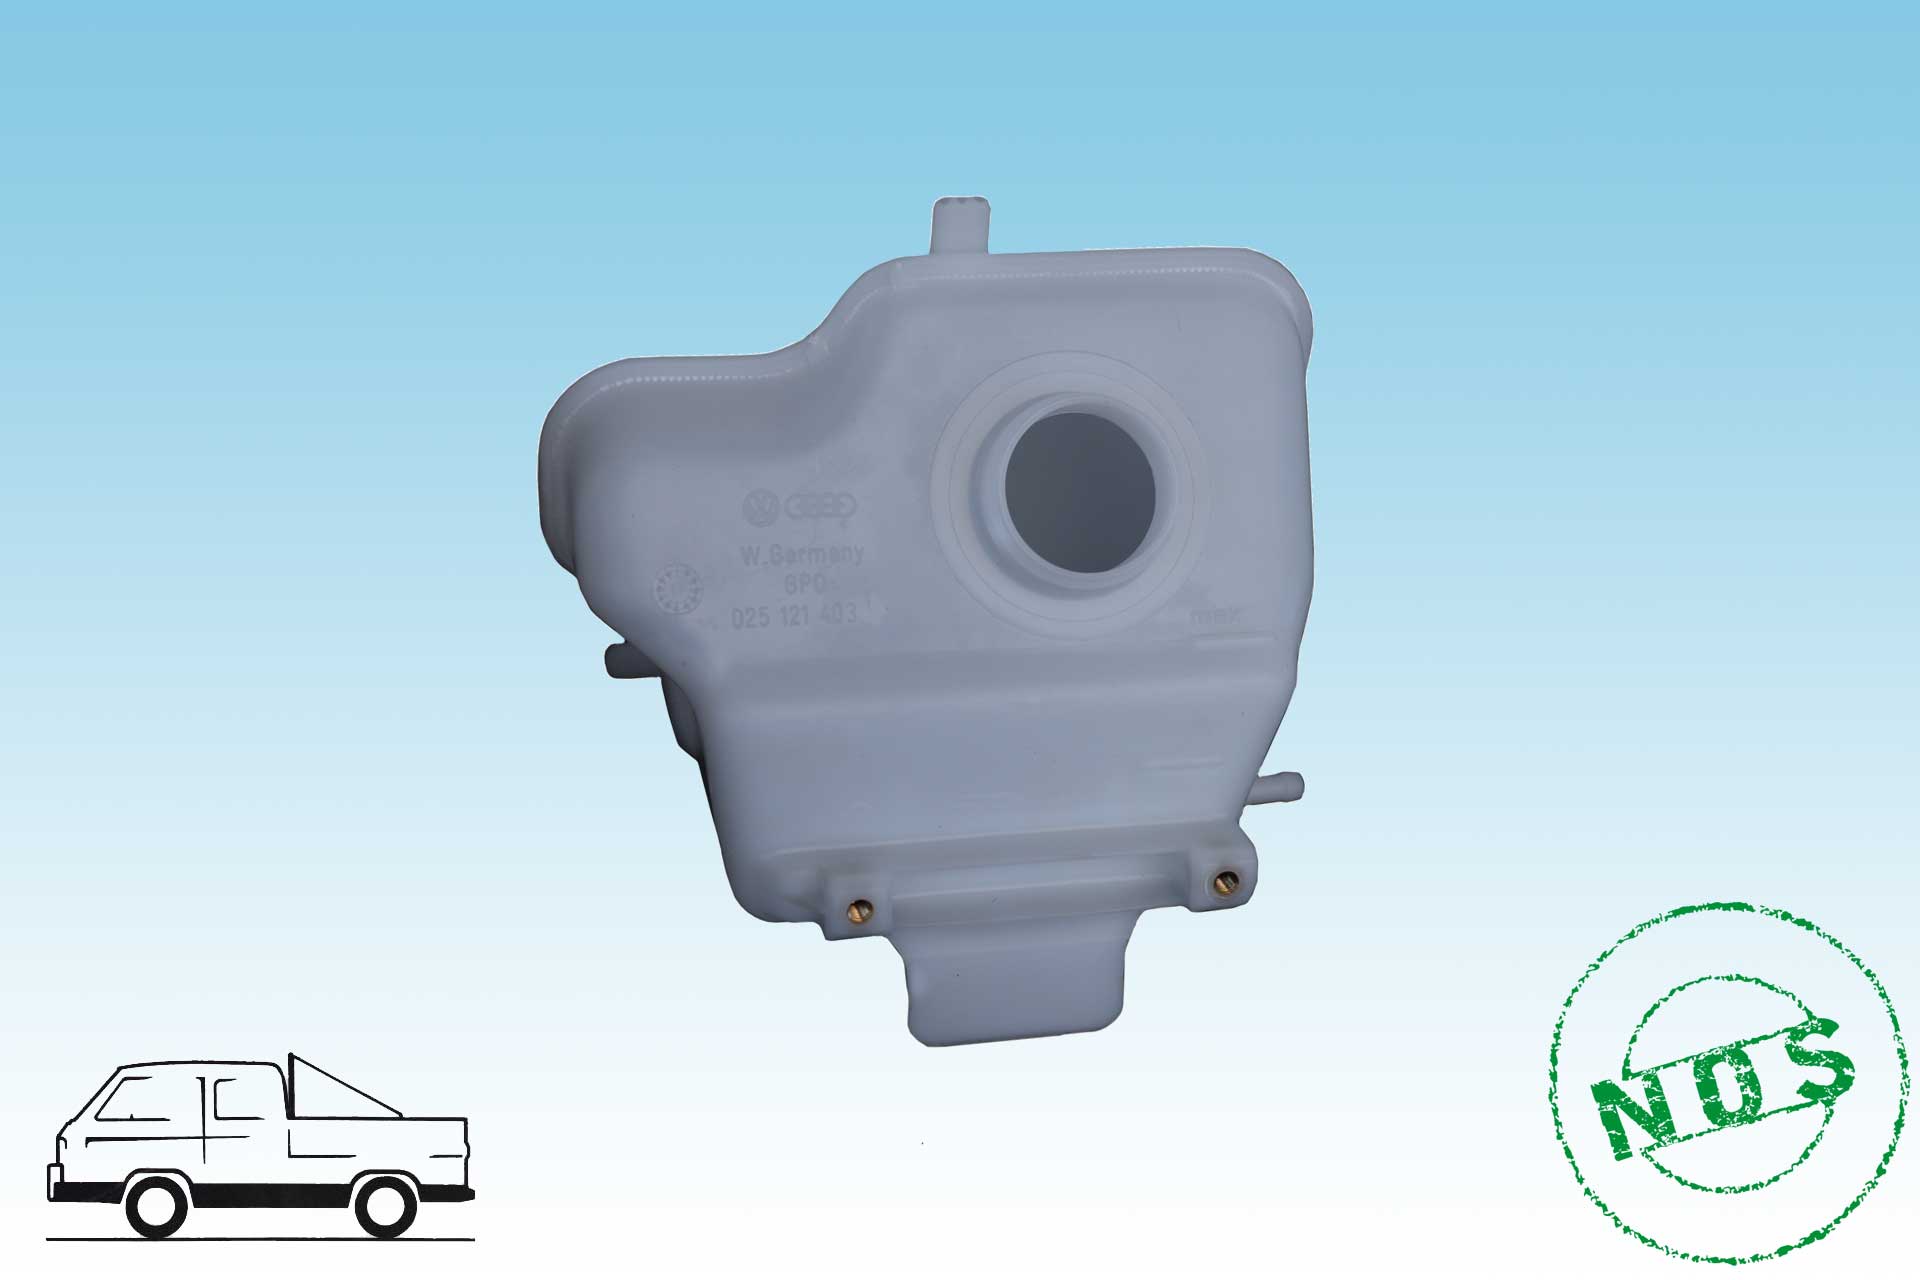 T3 Bus Nachfüllbehälter für Kühlflüssigkeit, Zubehör, Wasserboxer ( WBX ), Kühlung / Wasserkreislauf